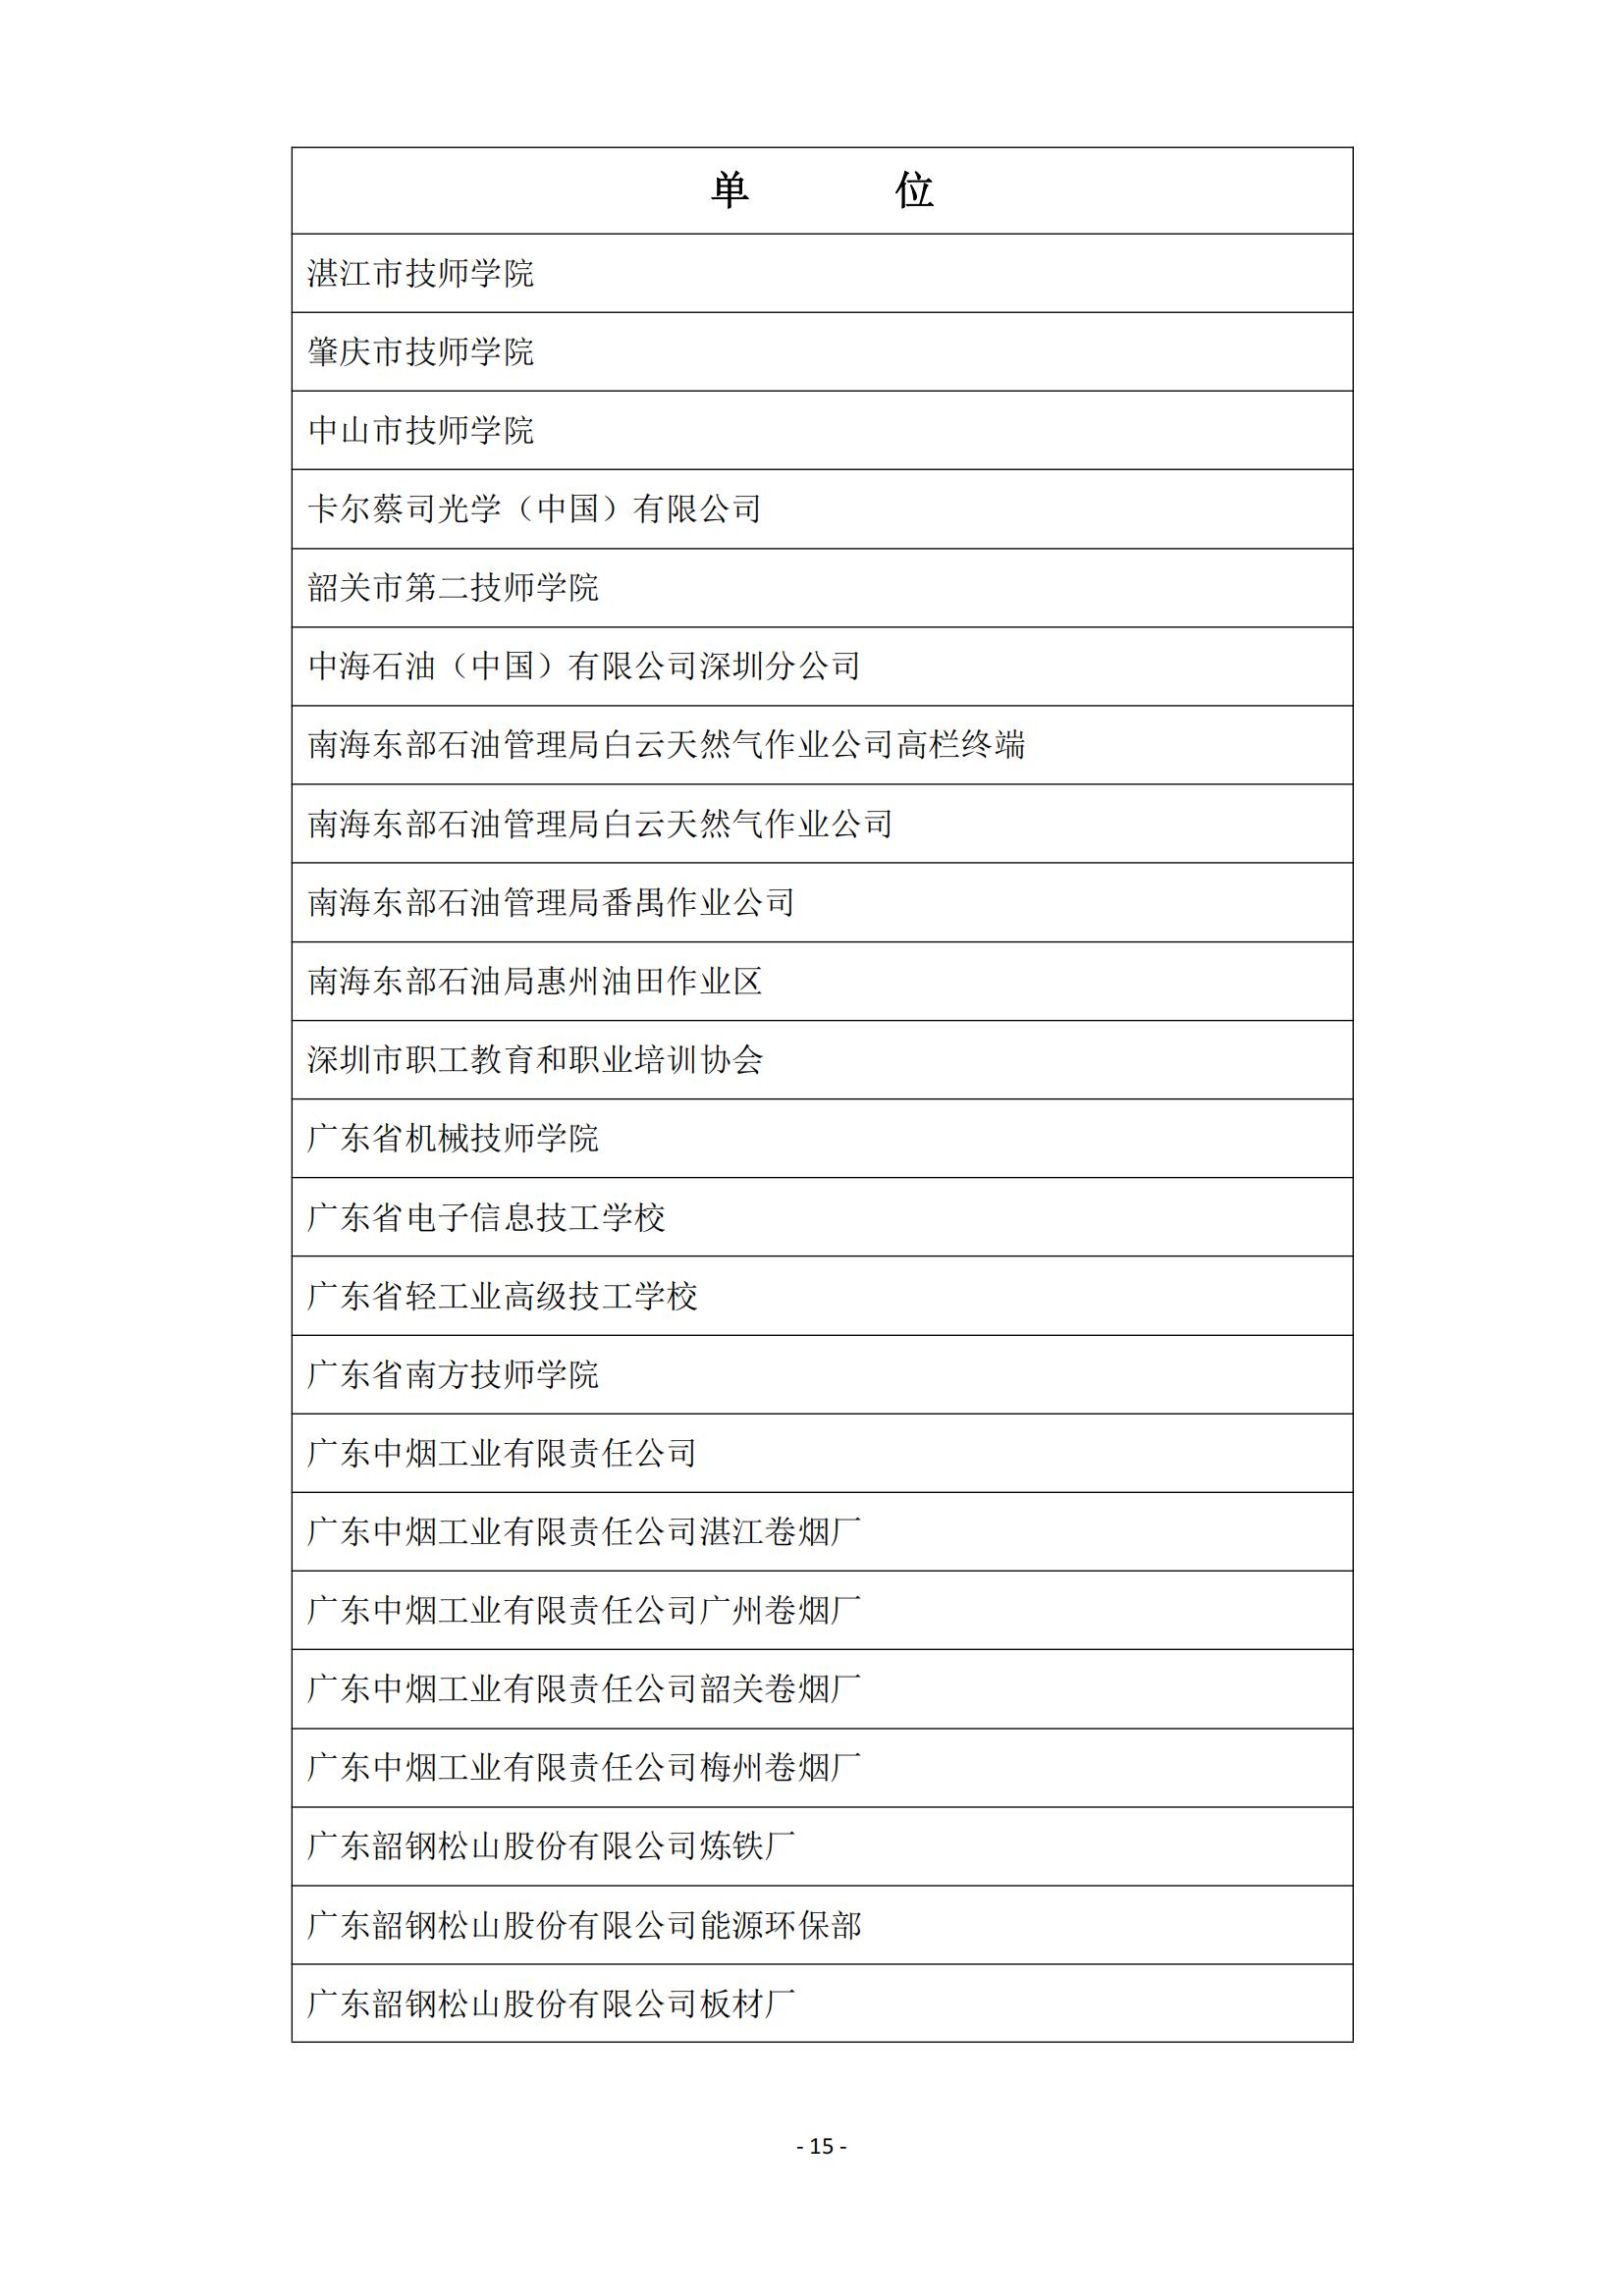 2015 年中国技能大赛--广东省机电一体化职业技能竞赛_14.jpg